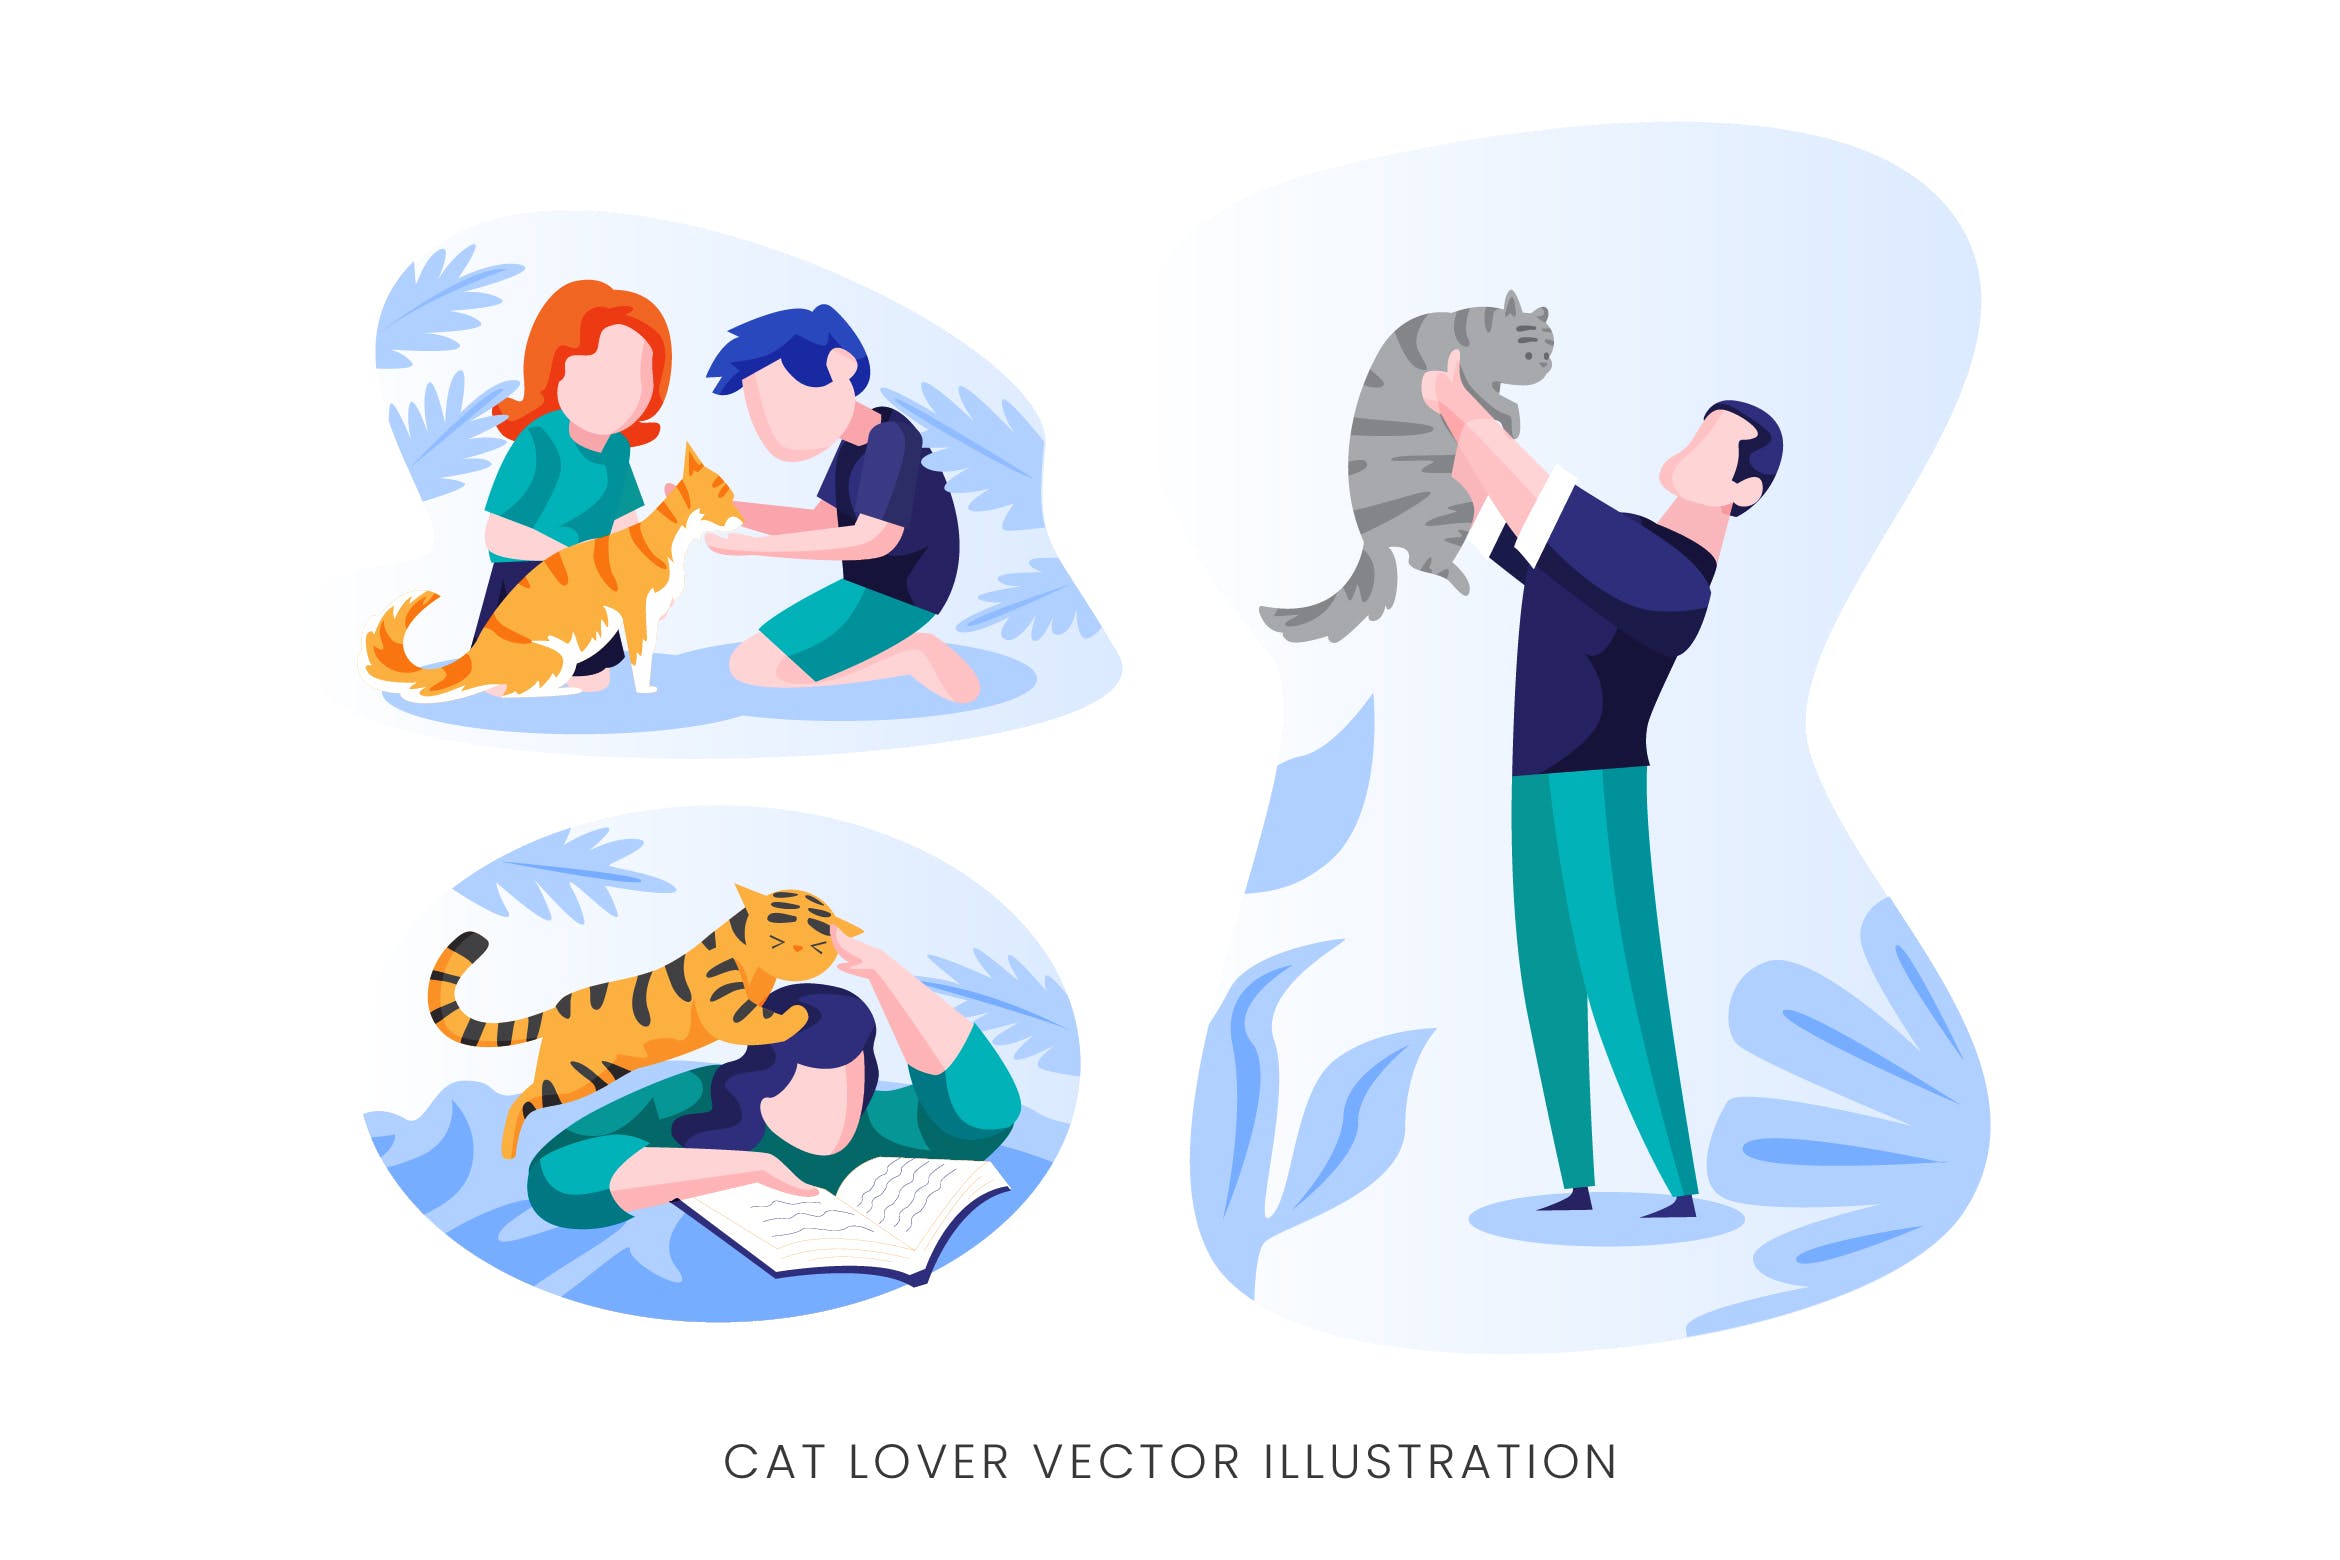 爱猫人士人物形象矢量手绘16图库精选设计素材 Cat Lover Vector Character Set插图